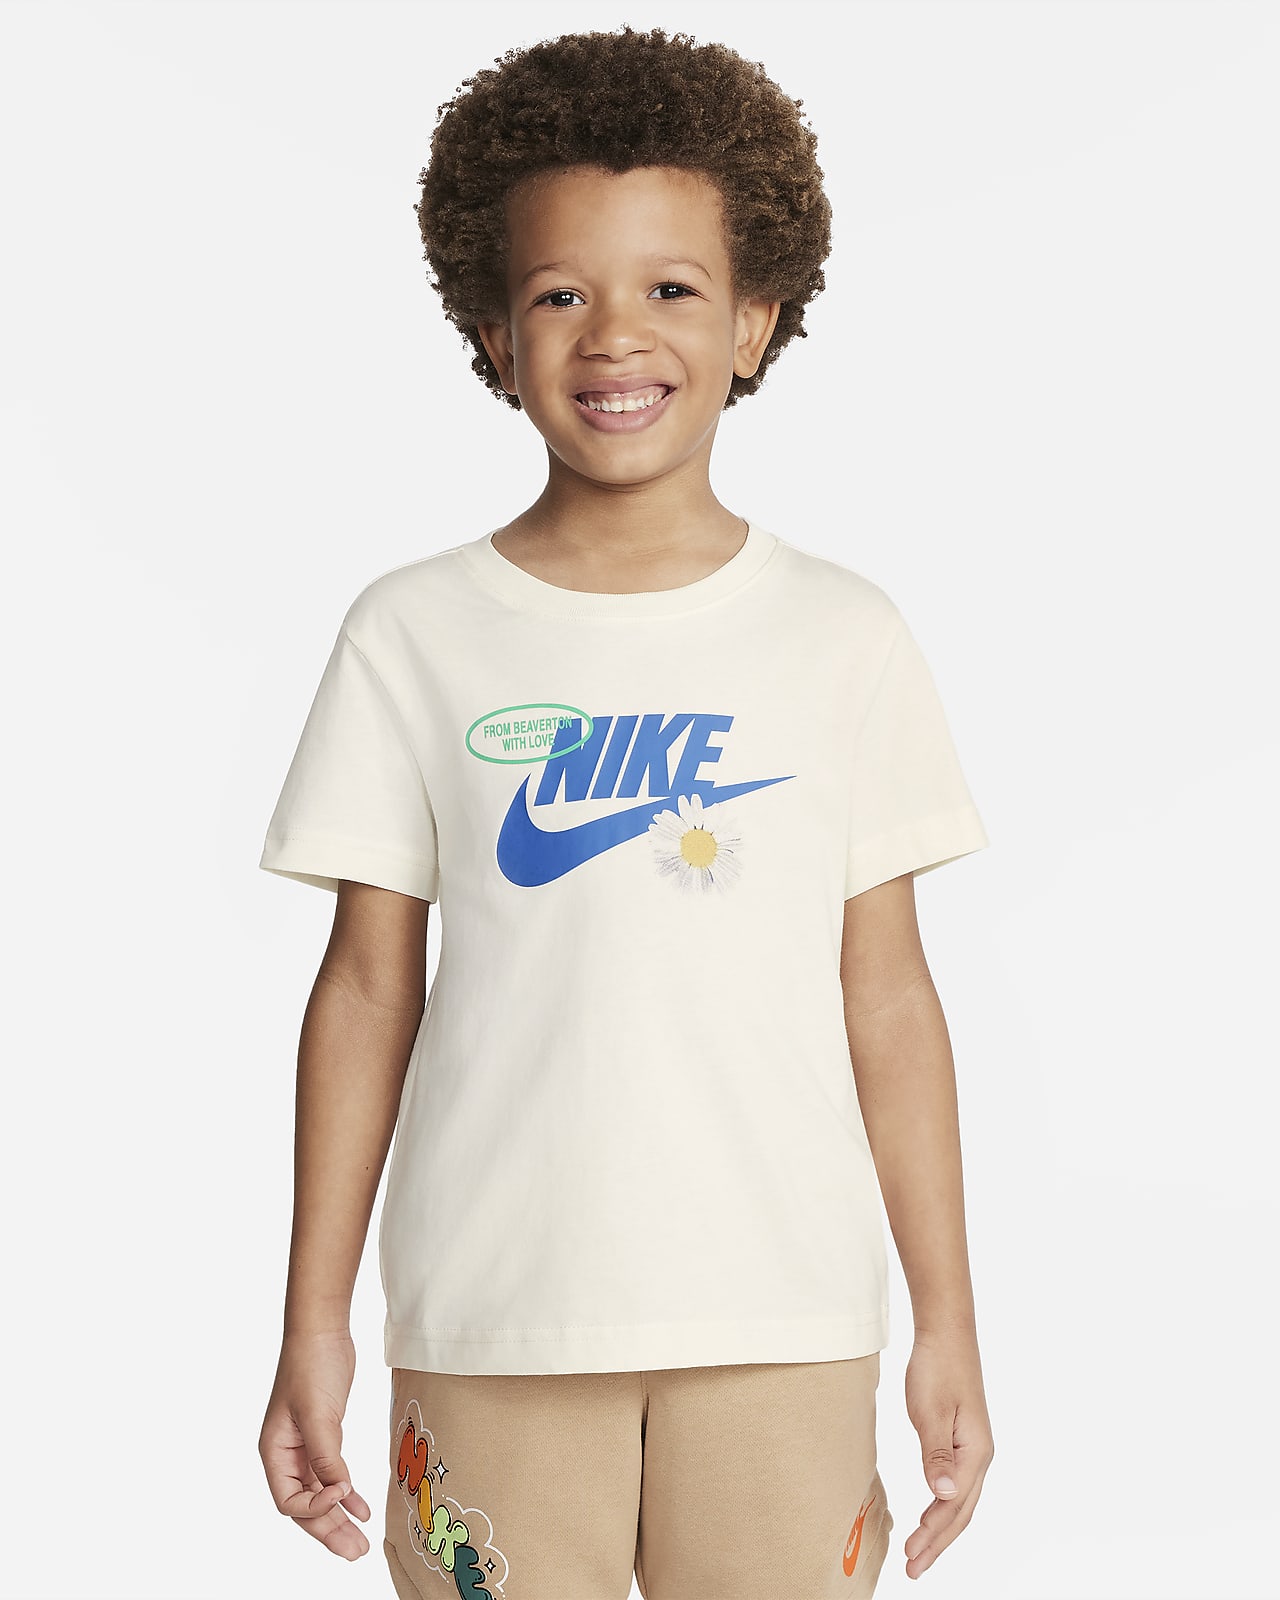 Nike 'From Beaverton' 幼童T恤